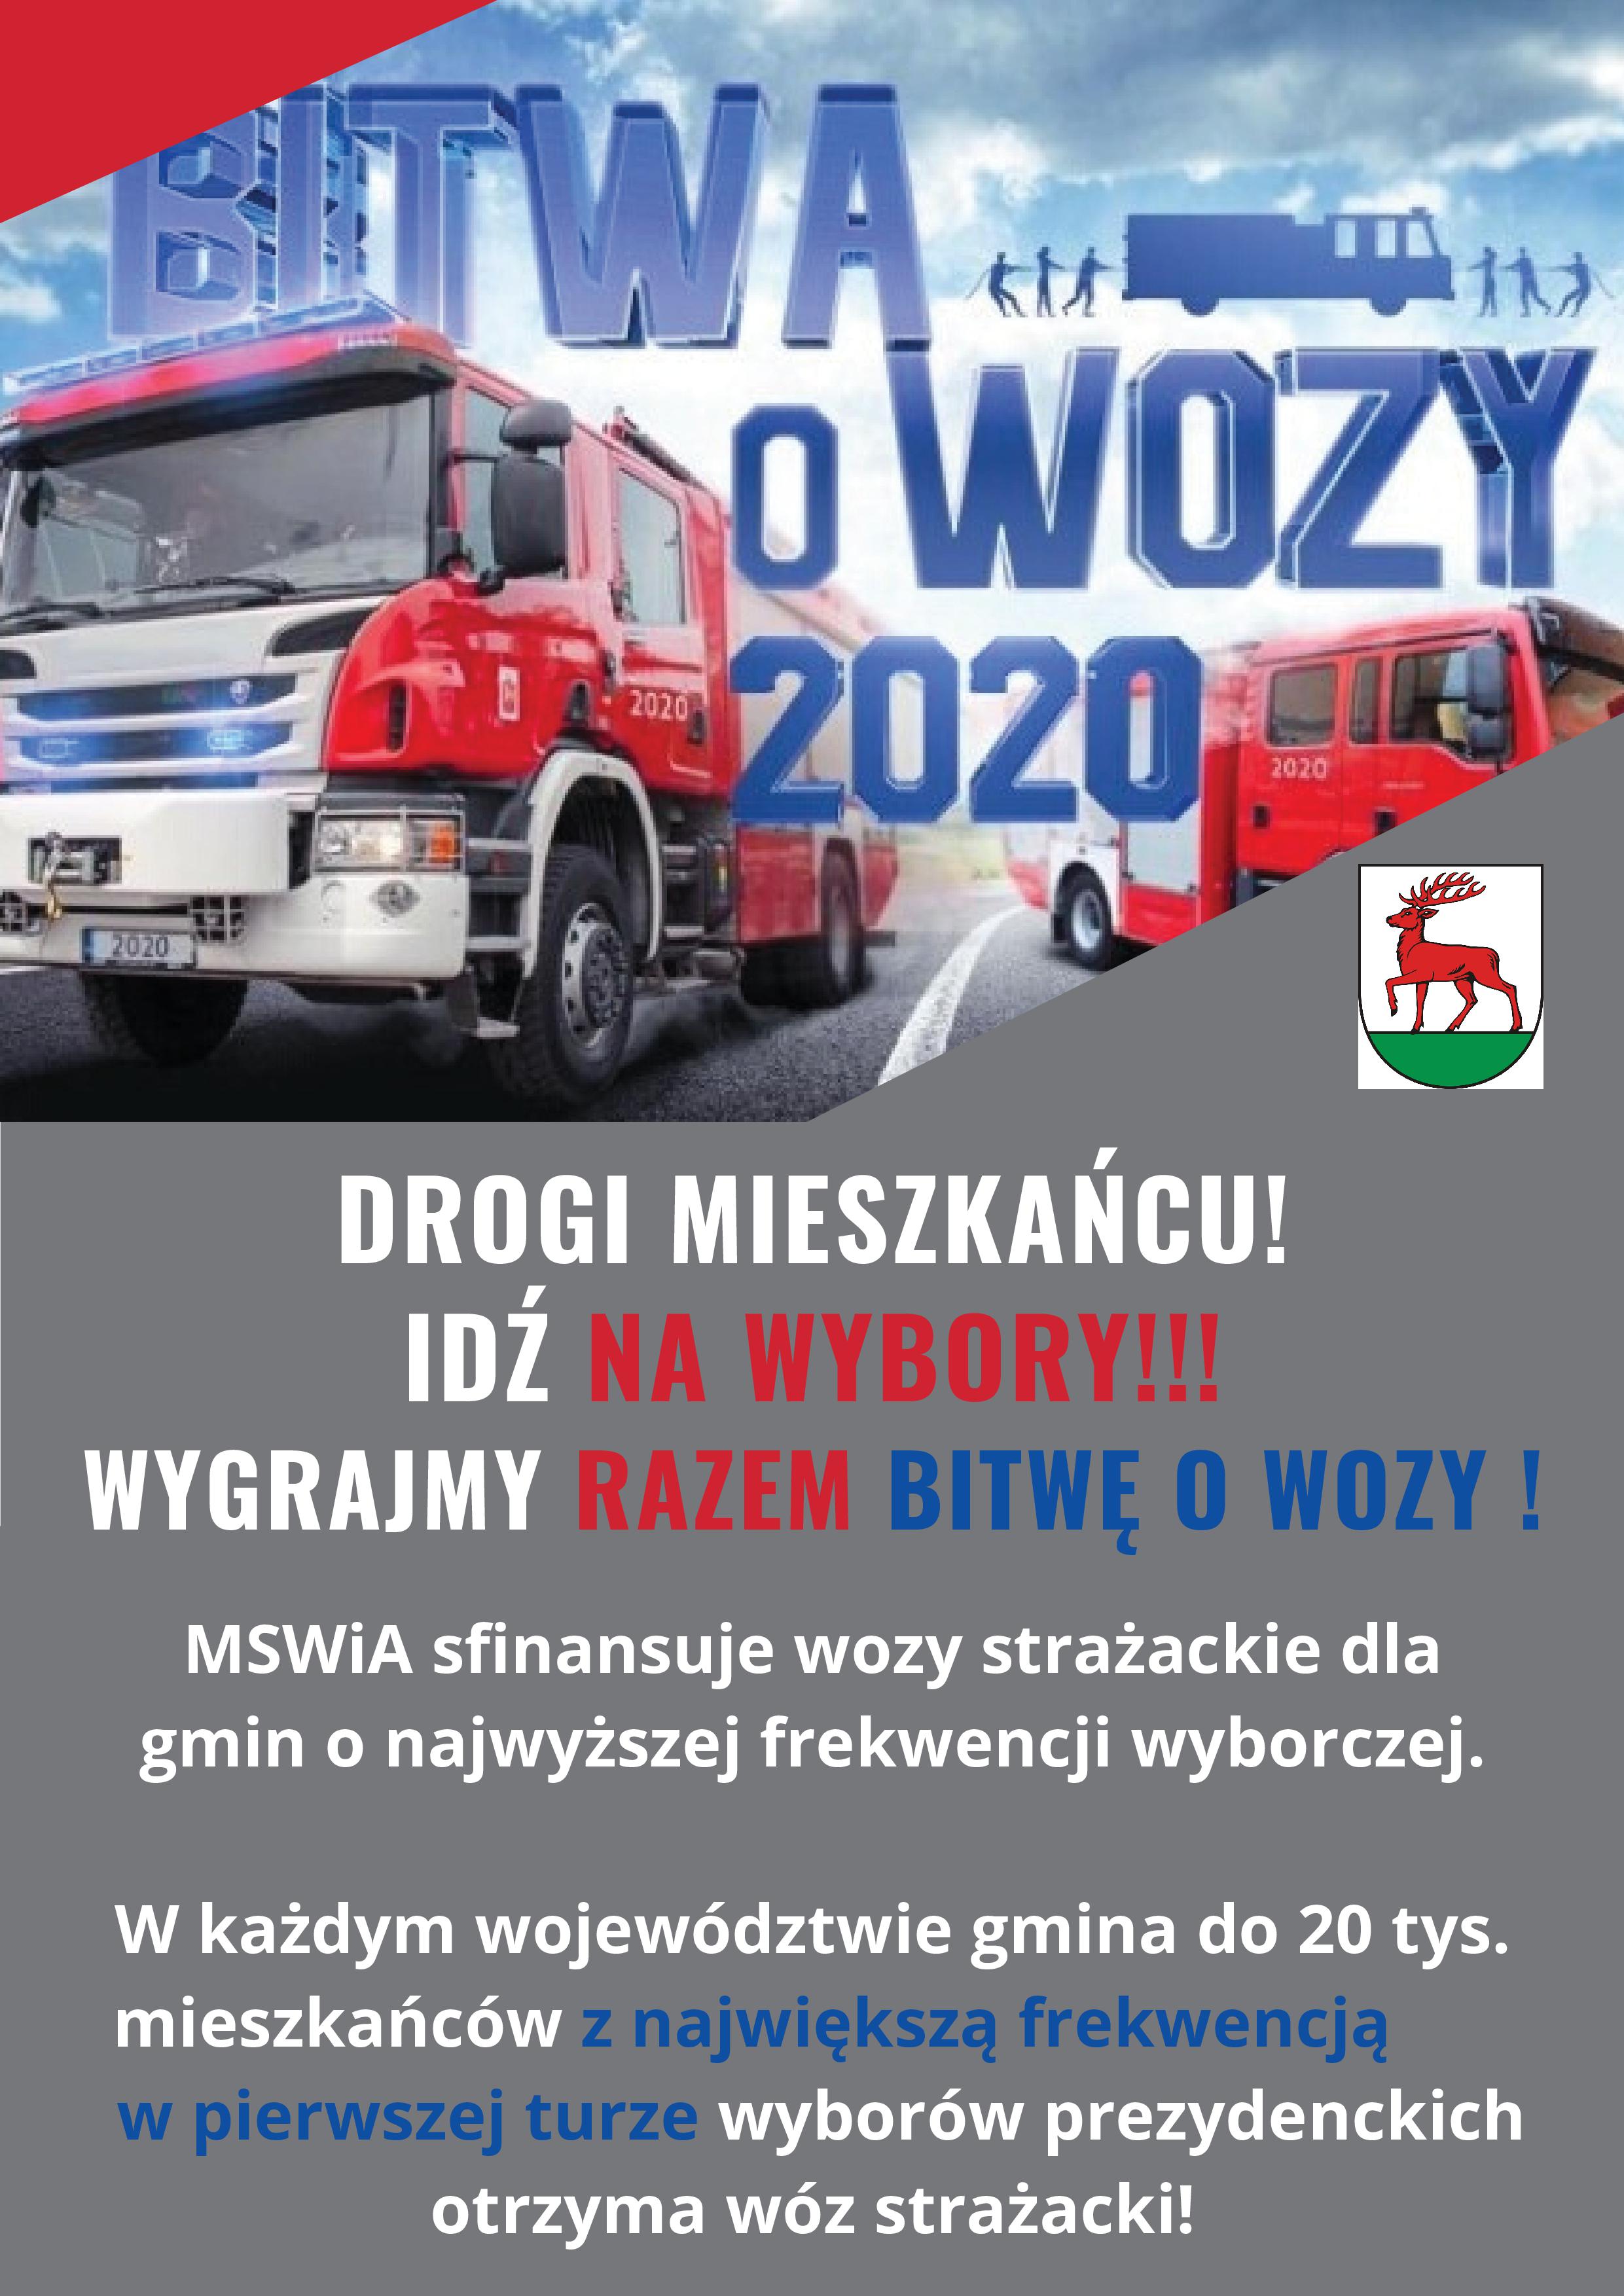 Ilustracja do informacji: „Bitwa o wozy” – MSWiA sfinansuje wozy strażackie dla gmin o najwyższej frekwencji wyborczej.